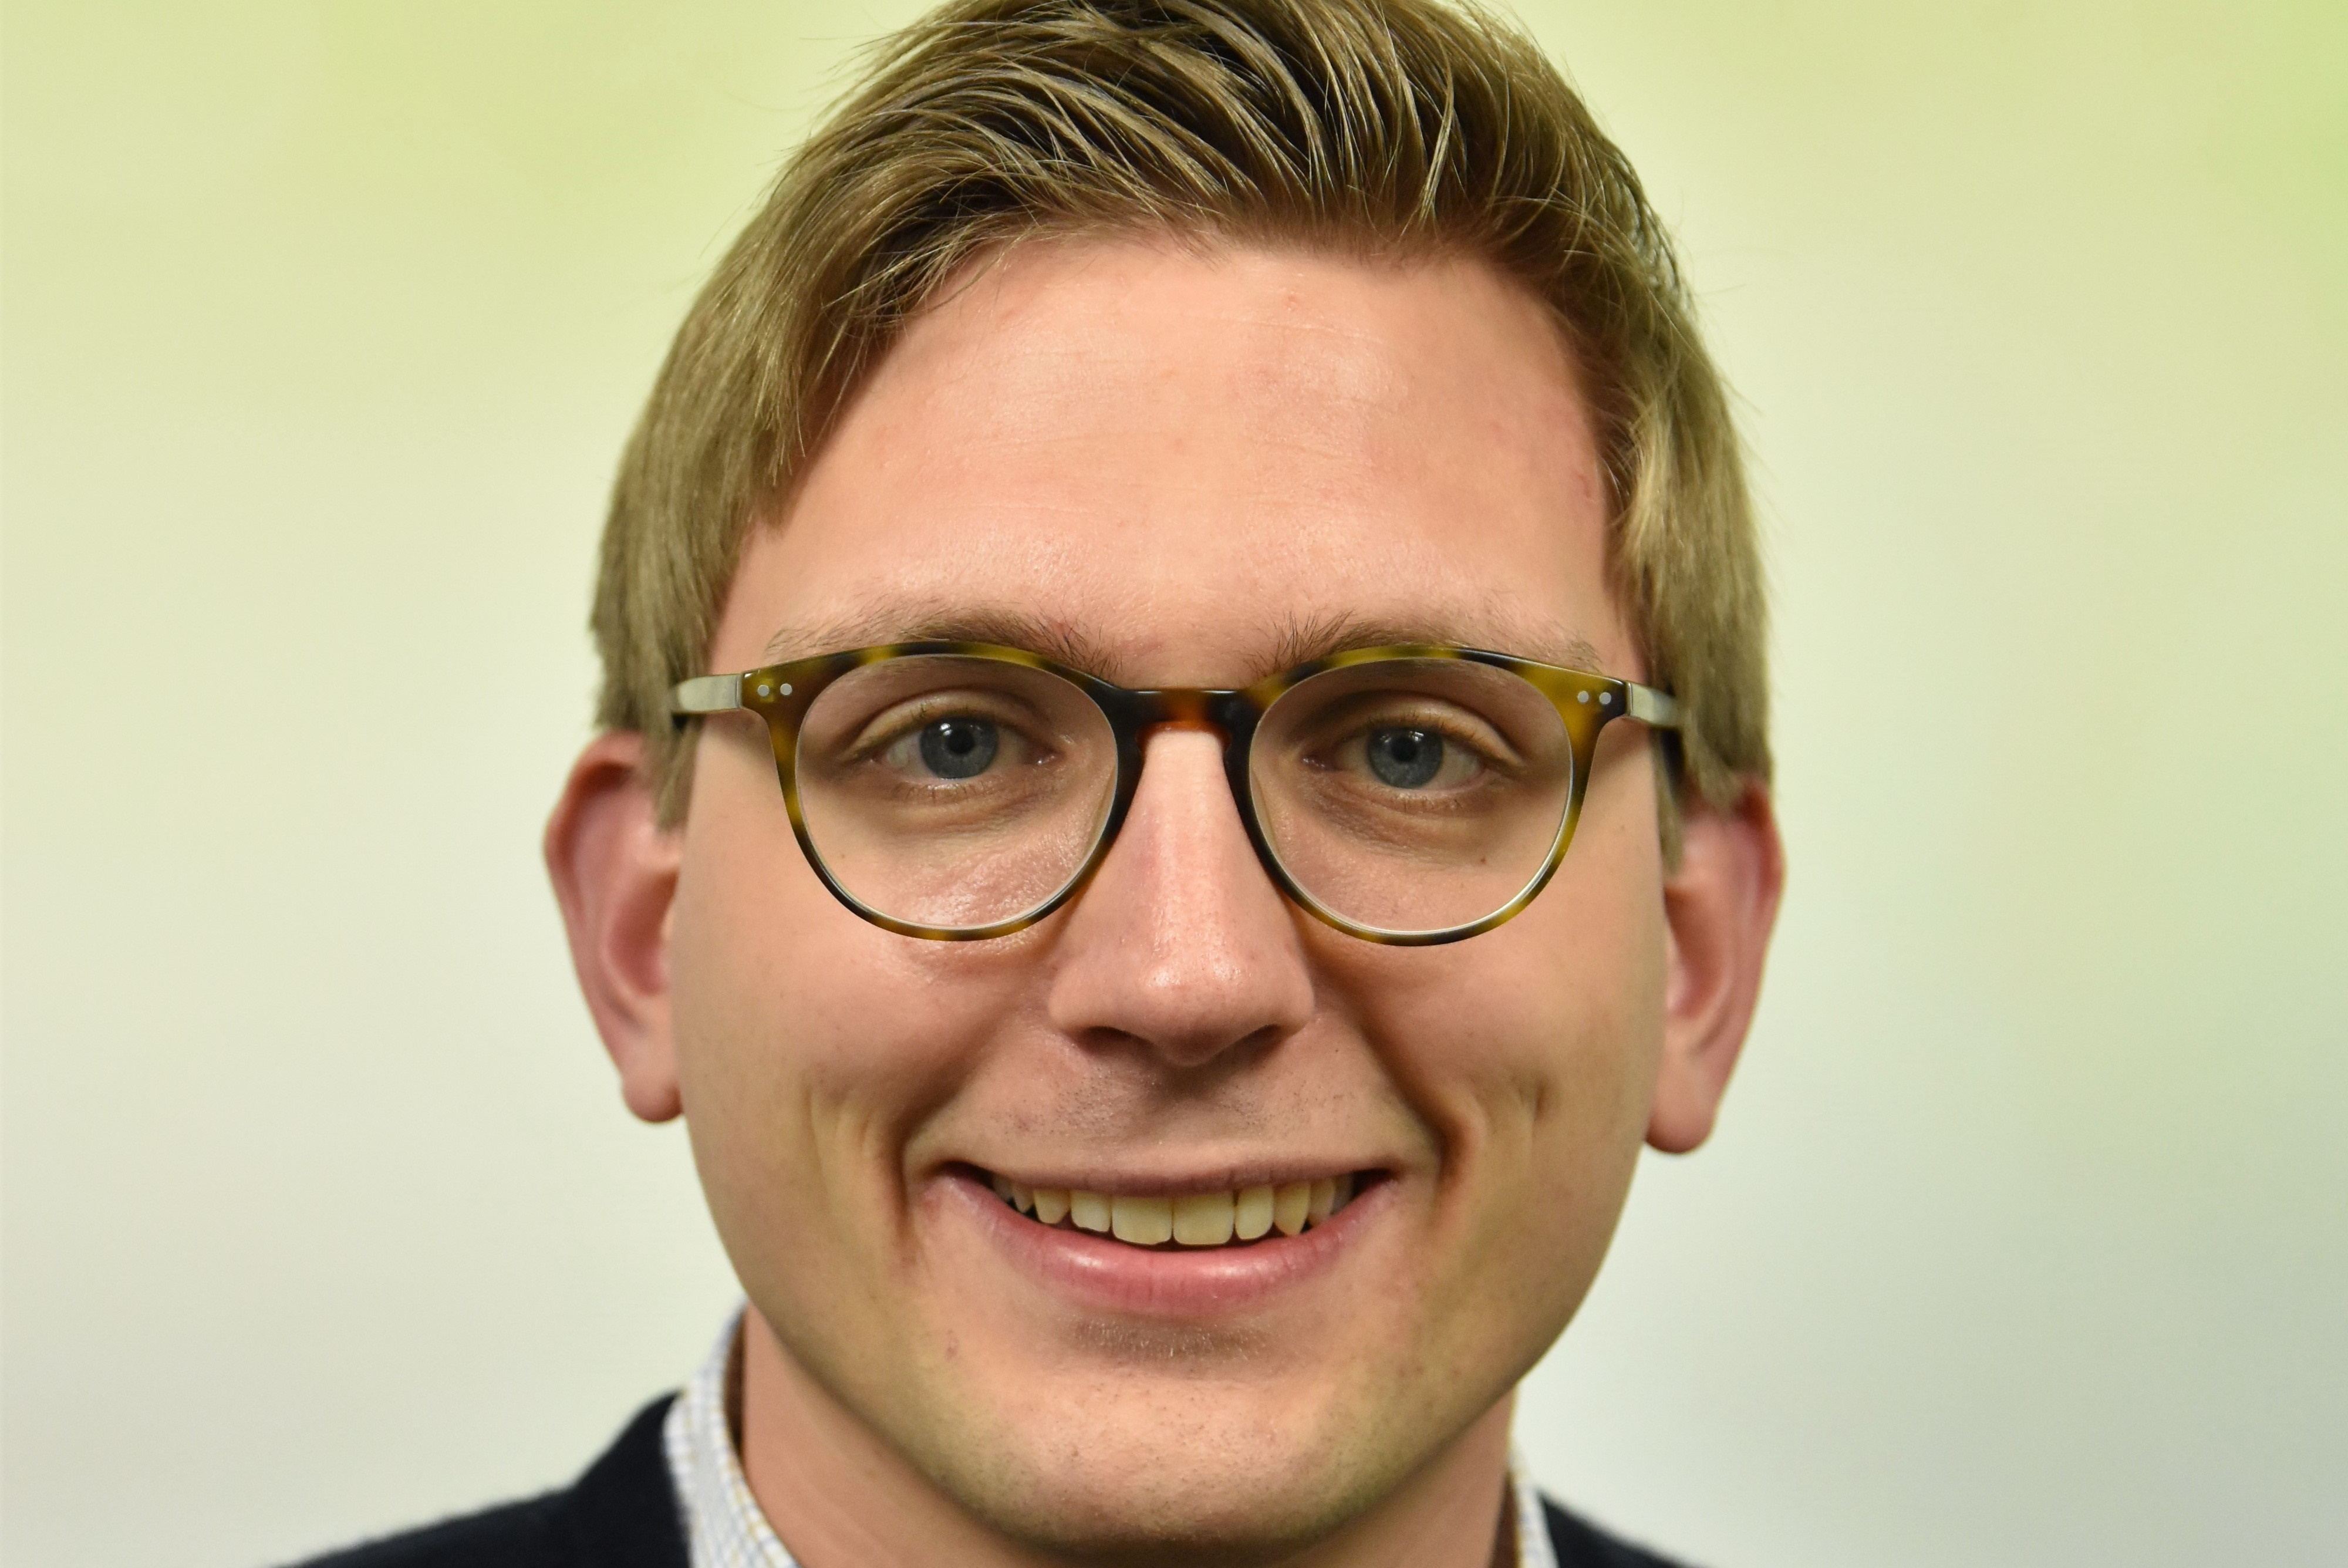 Produktmanager für Puten bei AGRAVIS: Johannes Bernhard Diekmann